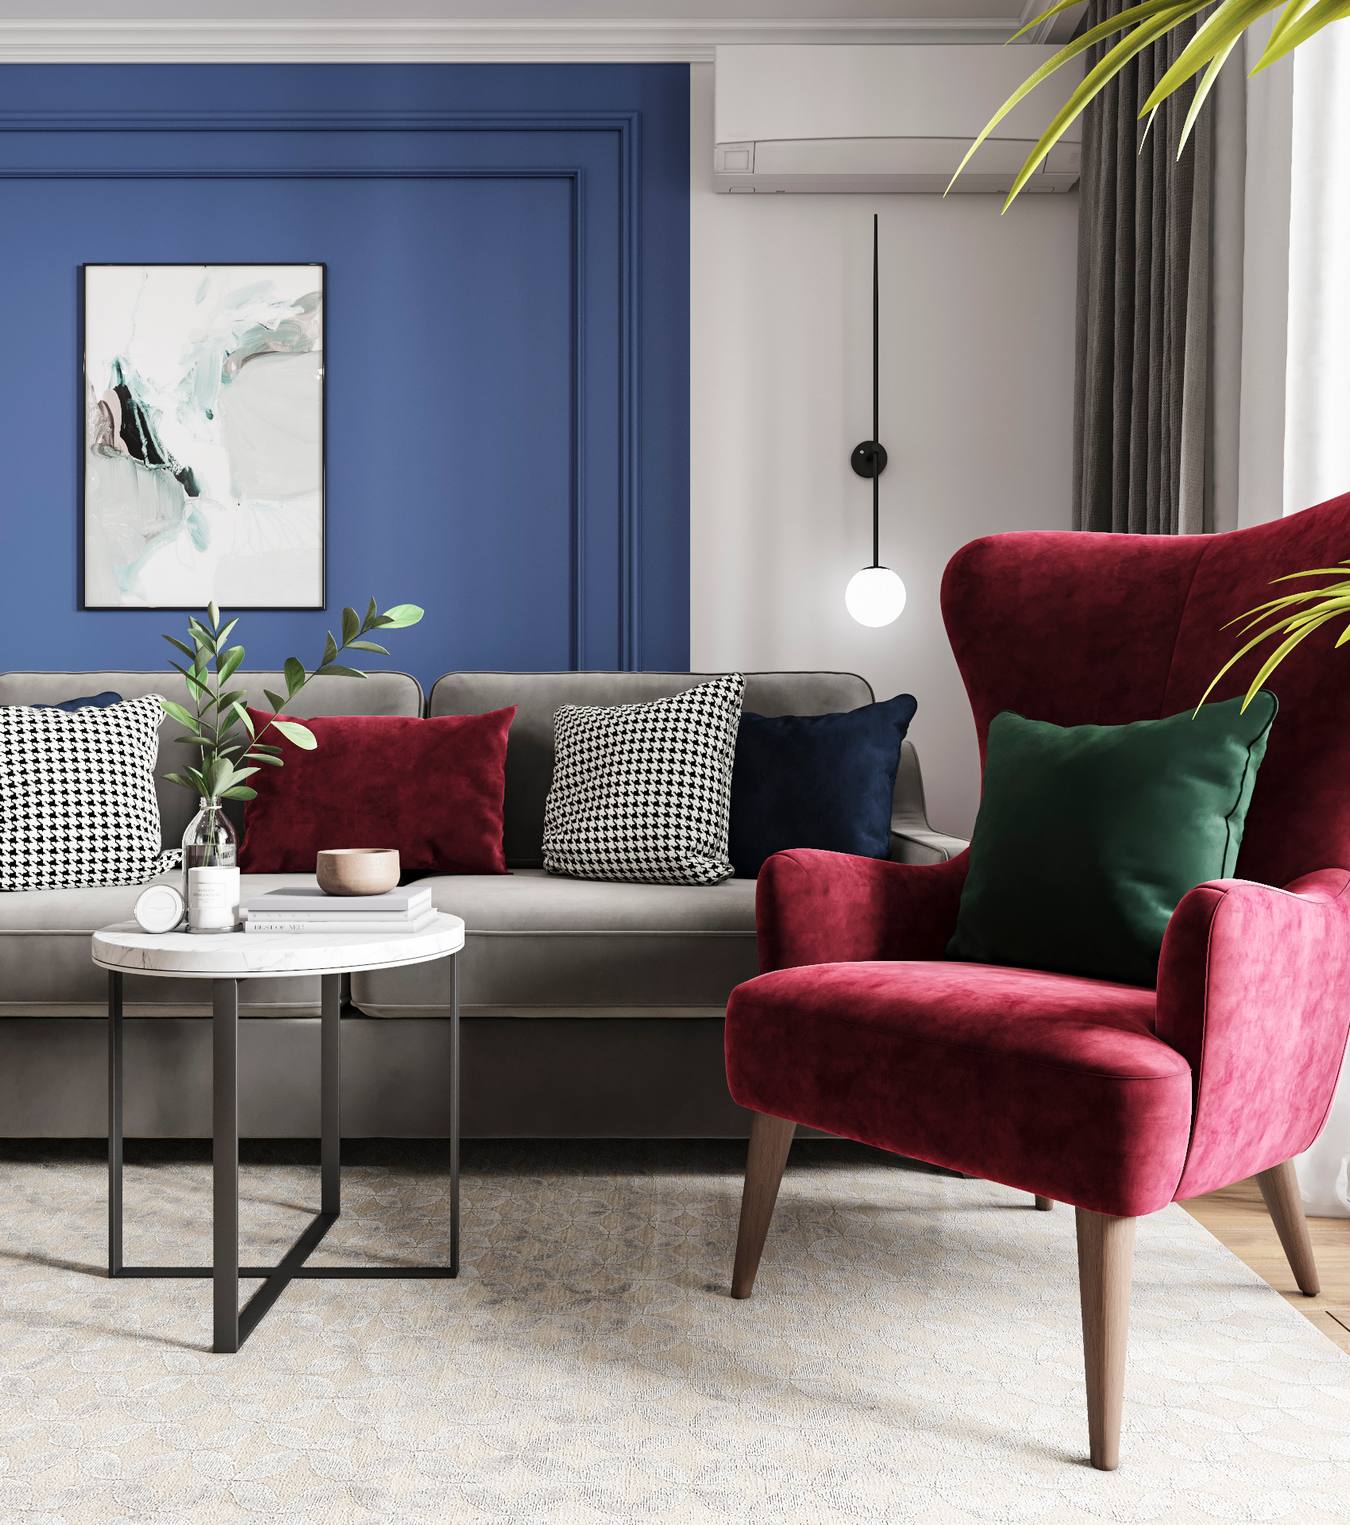 Phòng khách sống động với bức tường sơn màu xanh lam đậm và trắng. Bộ ghế sofa màu xám êm ái làm nền cho những chiếc gối bọc nhung màu đỏ, xanh lá, họa tiết kẻ trắng - đen bắt mắt.